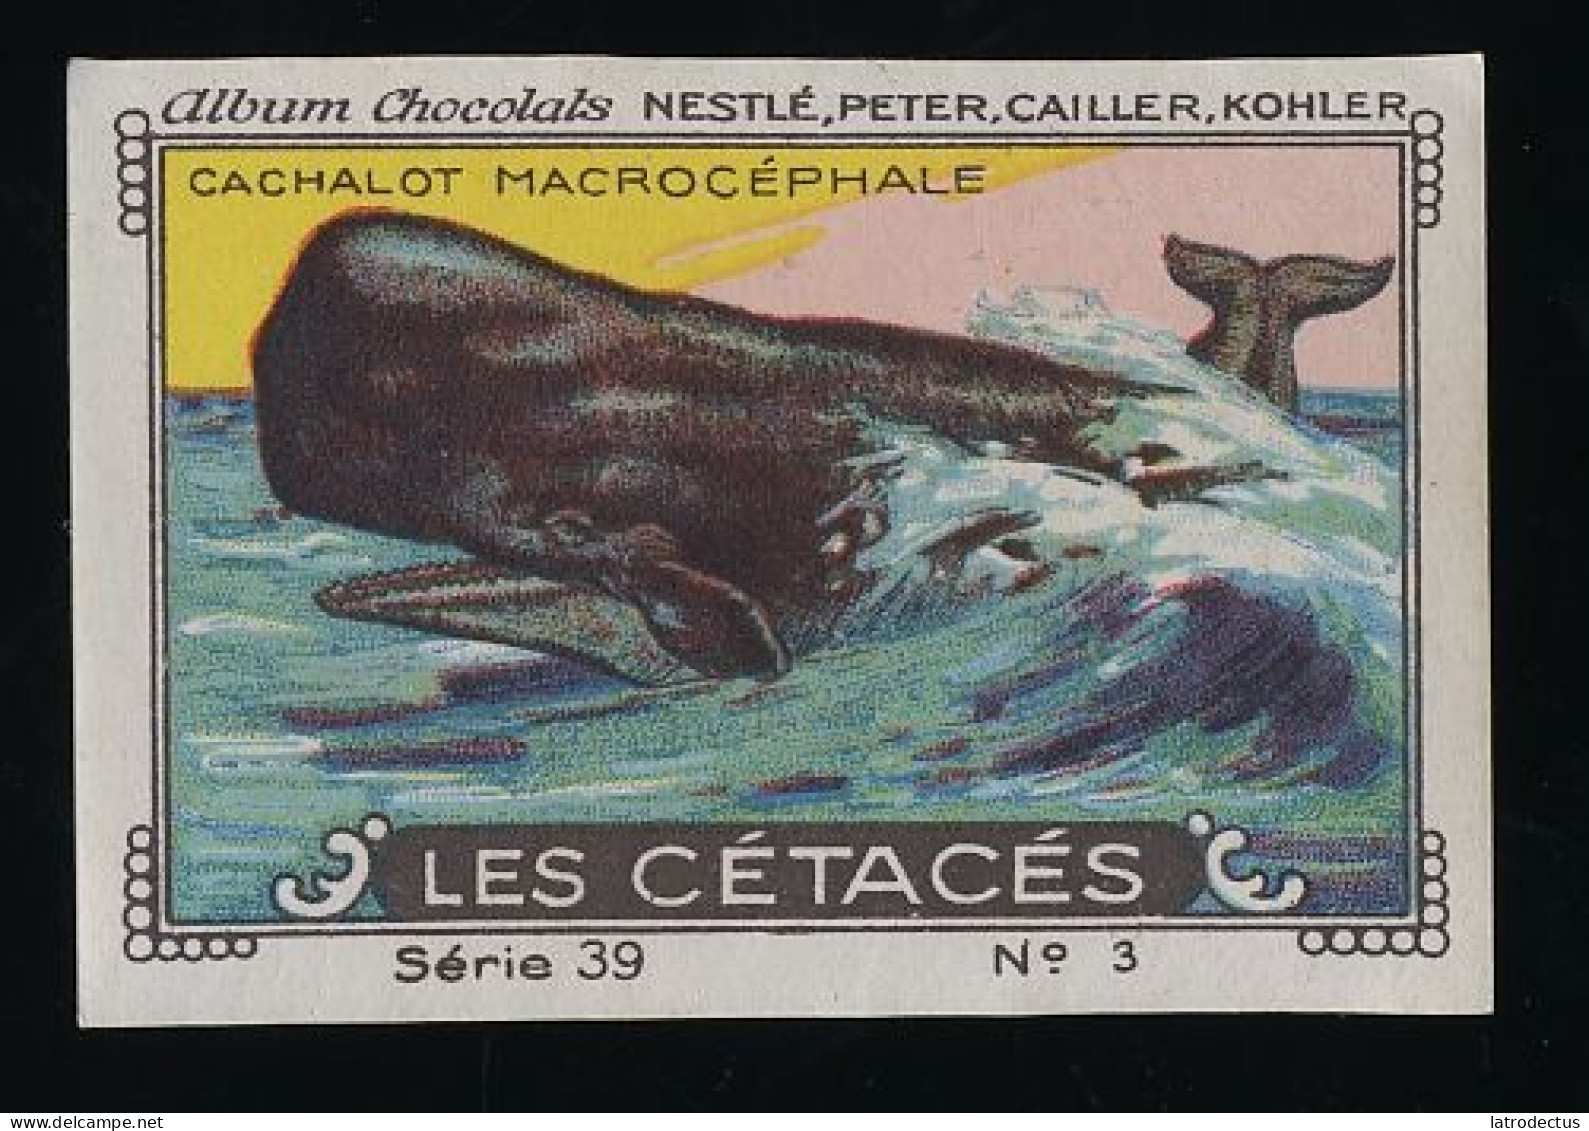 Nestlé - 39 - Les Cétacés, Cetacea - 3 - Cachalot Macrocéphale, Sperm Whale - Nestlé